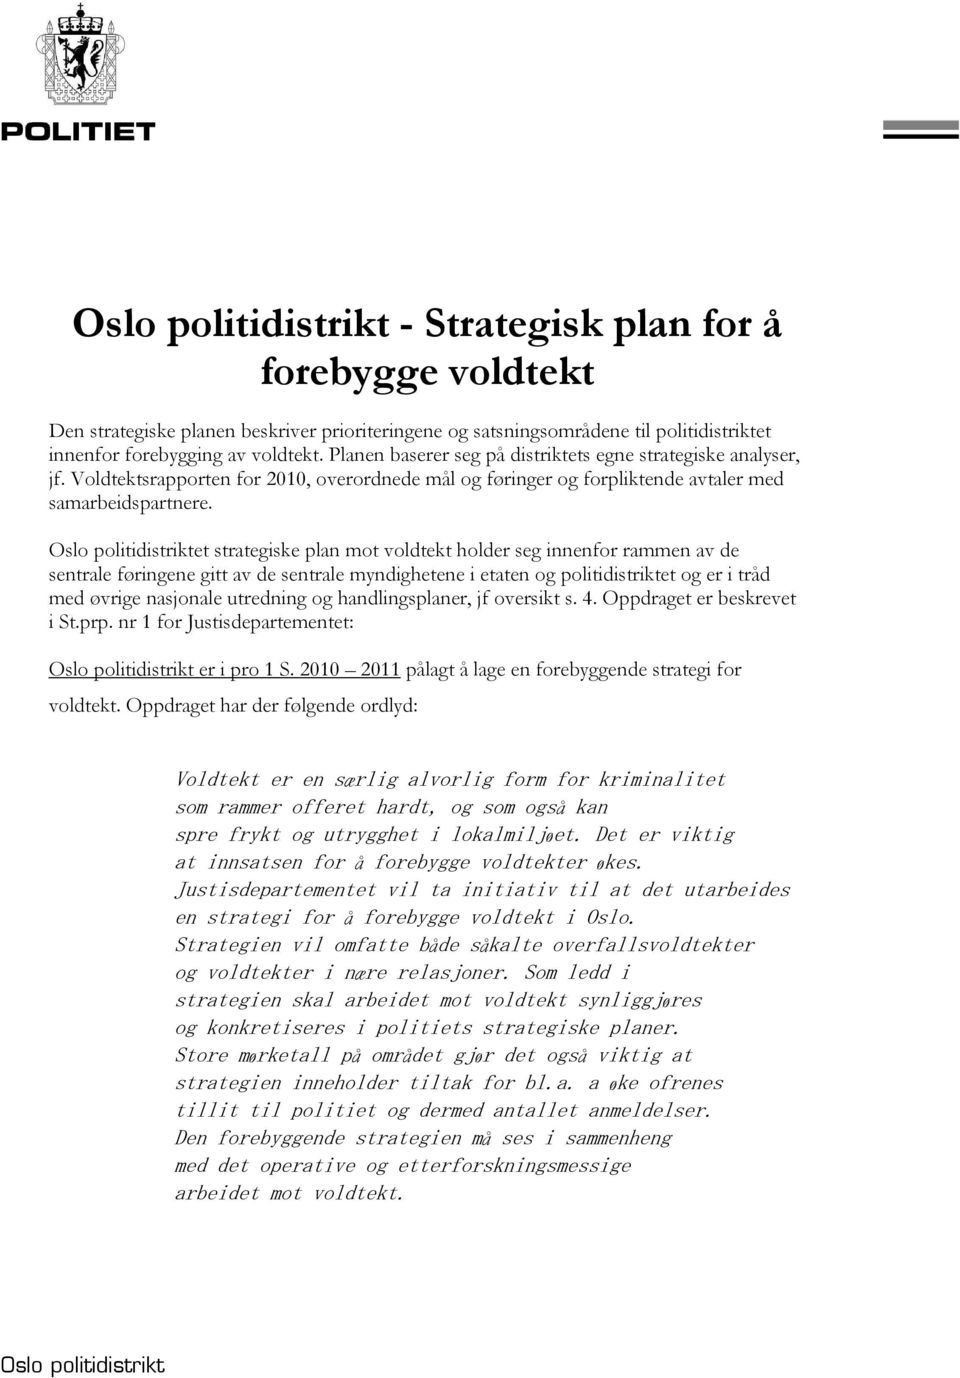 Oslo politidistriktet strategiske plan mot voldtekt holder seg innenfor rammen av de sentrale føringene gitt av de sentrale myndighetene i etaten og politidistriktet og er i tråd med øvrige nasjonale